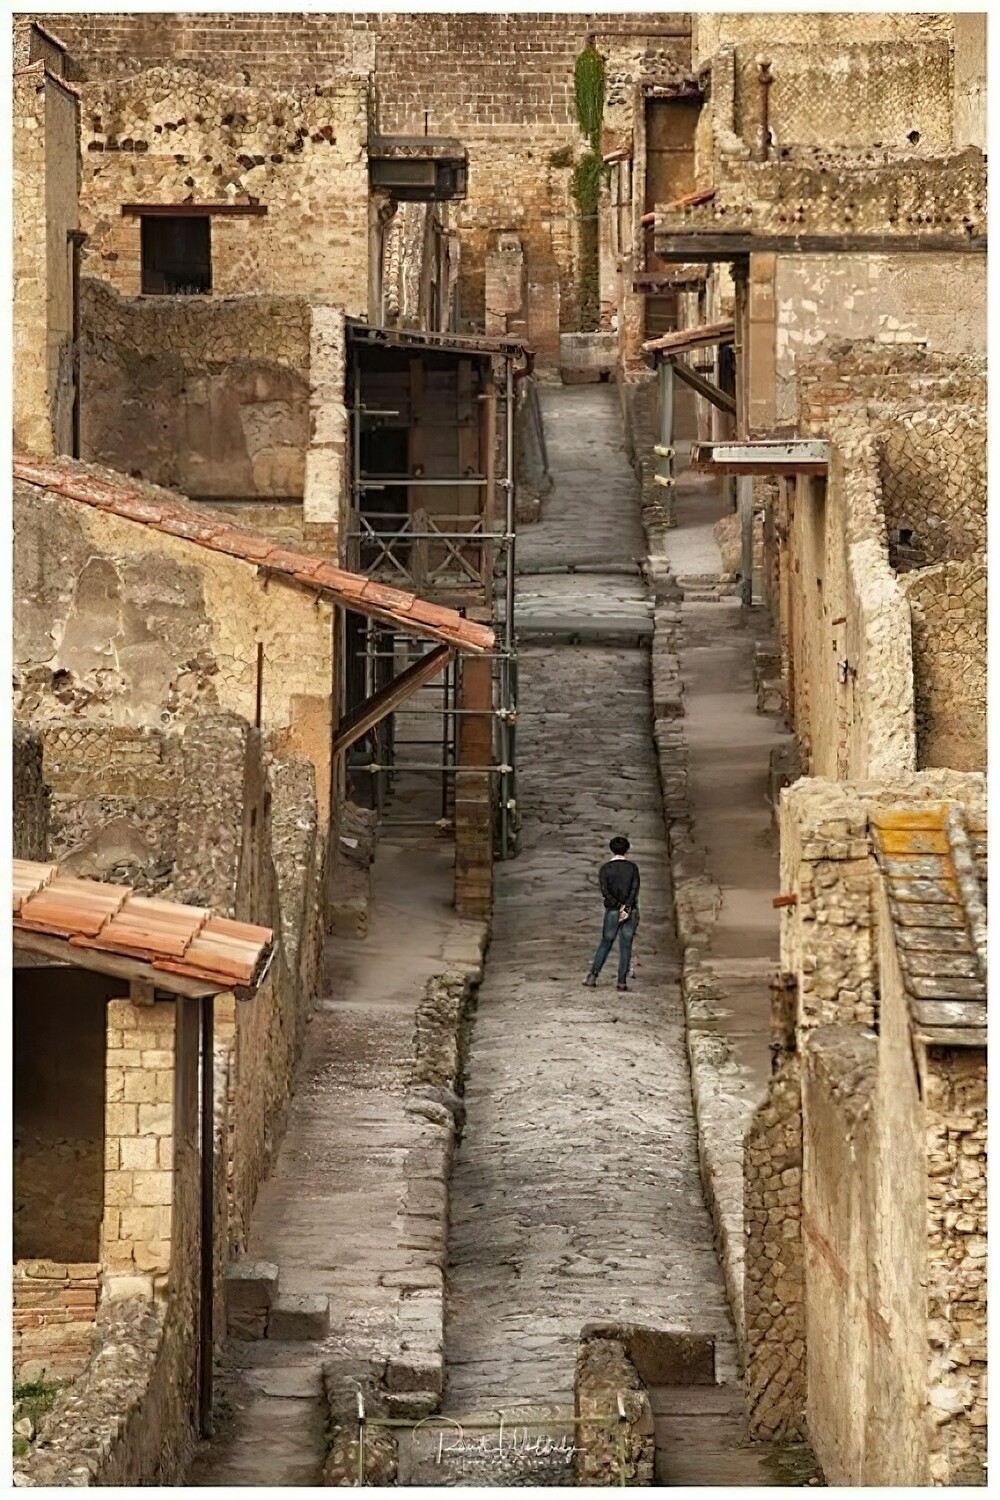 44. Руины Геркуланума. Похожи на Помпеи, но лучше сохранились